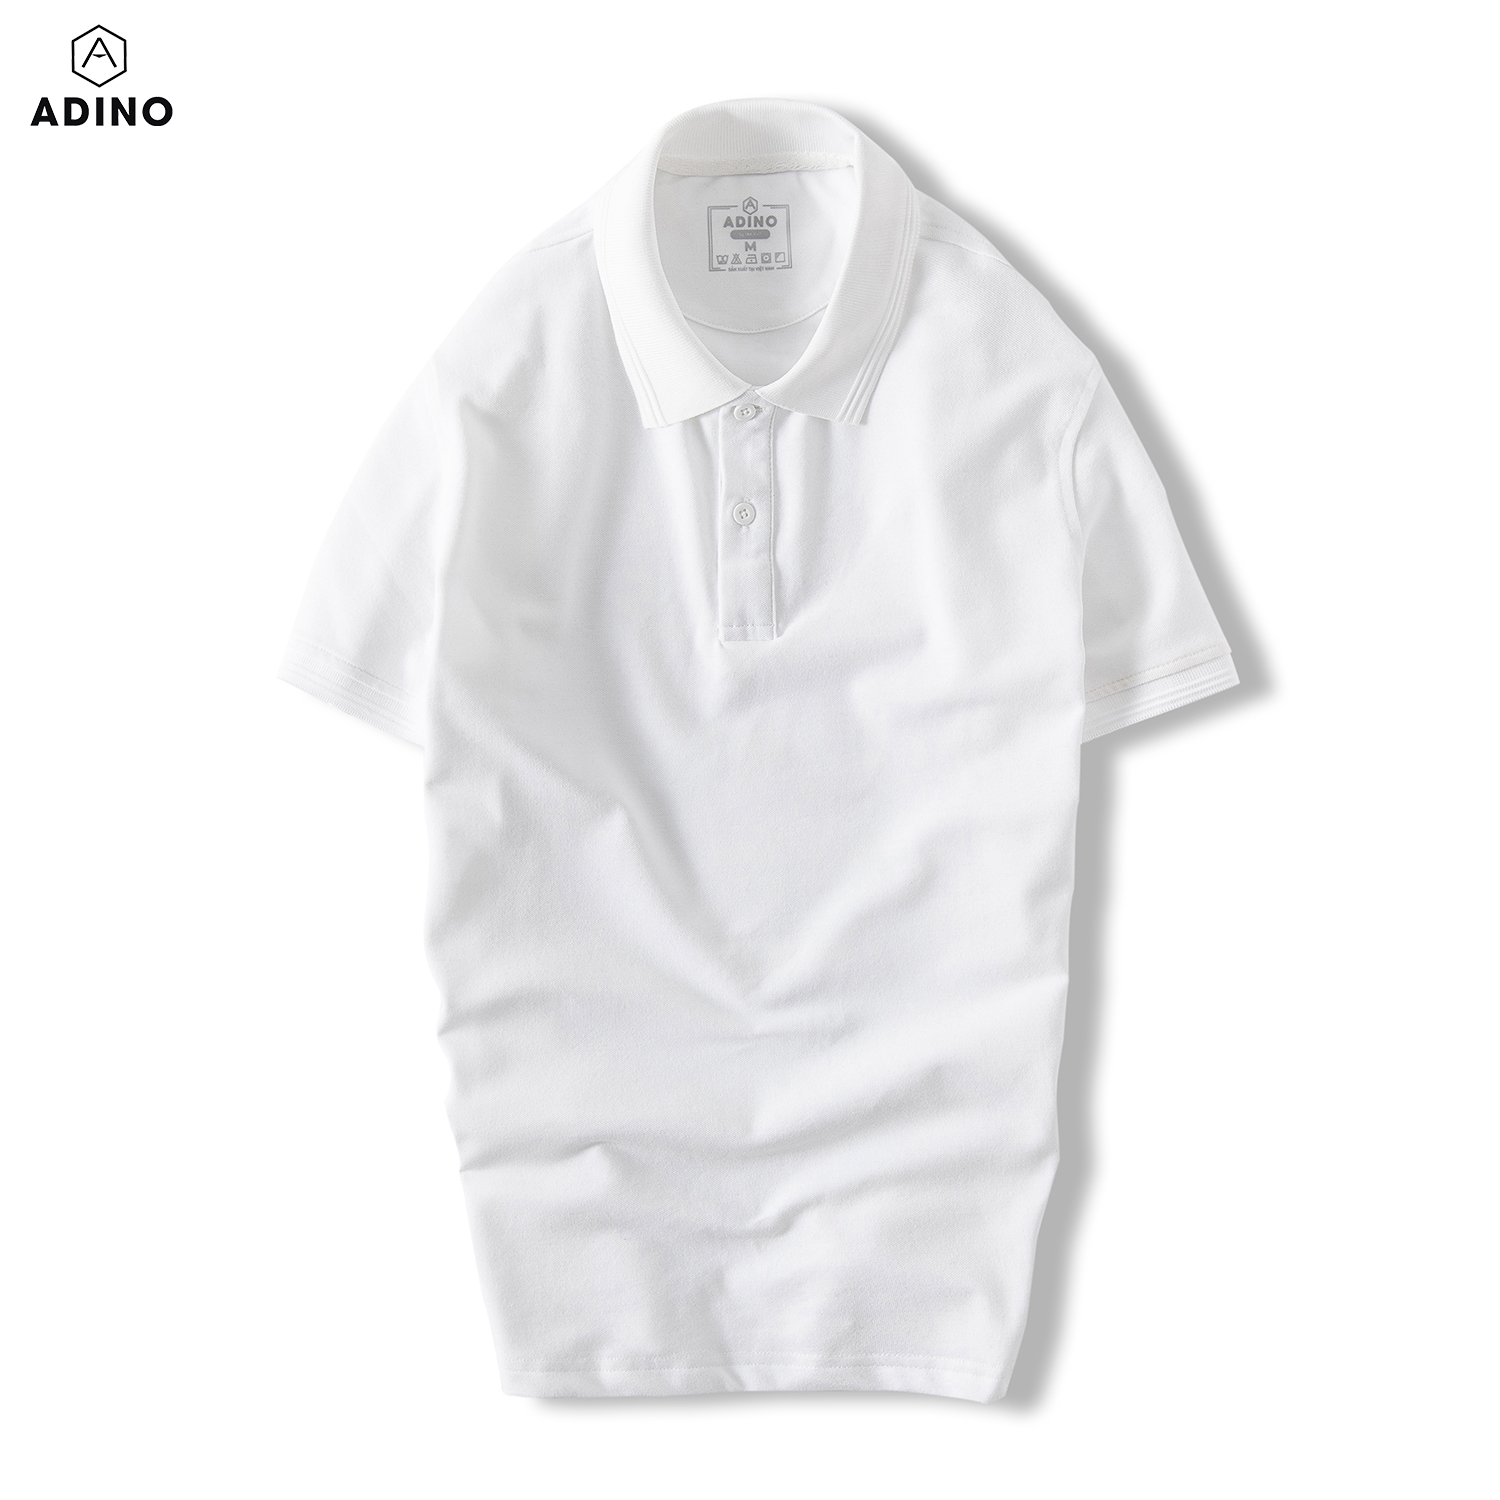 Áo polo nam ADINO màu xanh nhạt phối viền chìm vải cotton polyester co giãn dáng công sở slimfit hơi ôm trẻ trung AP82